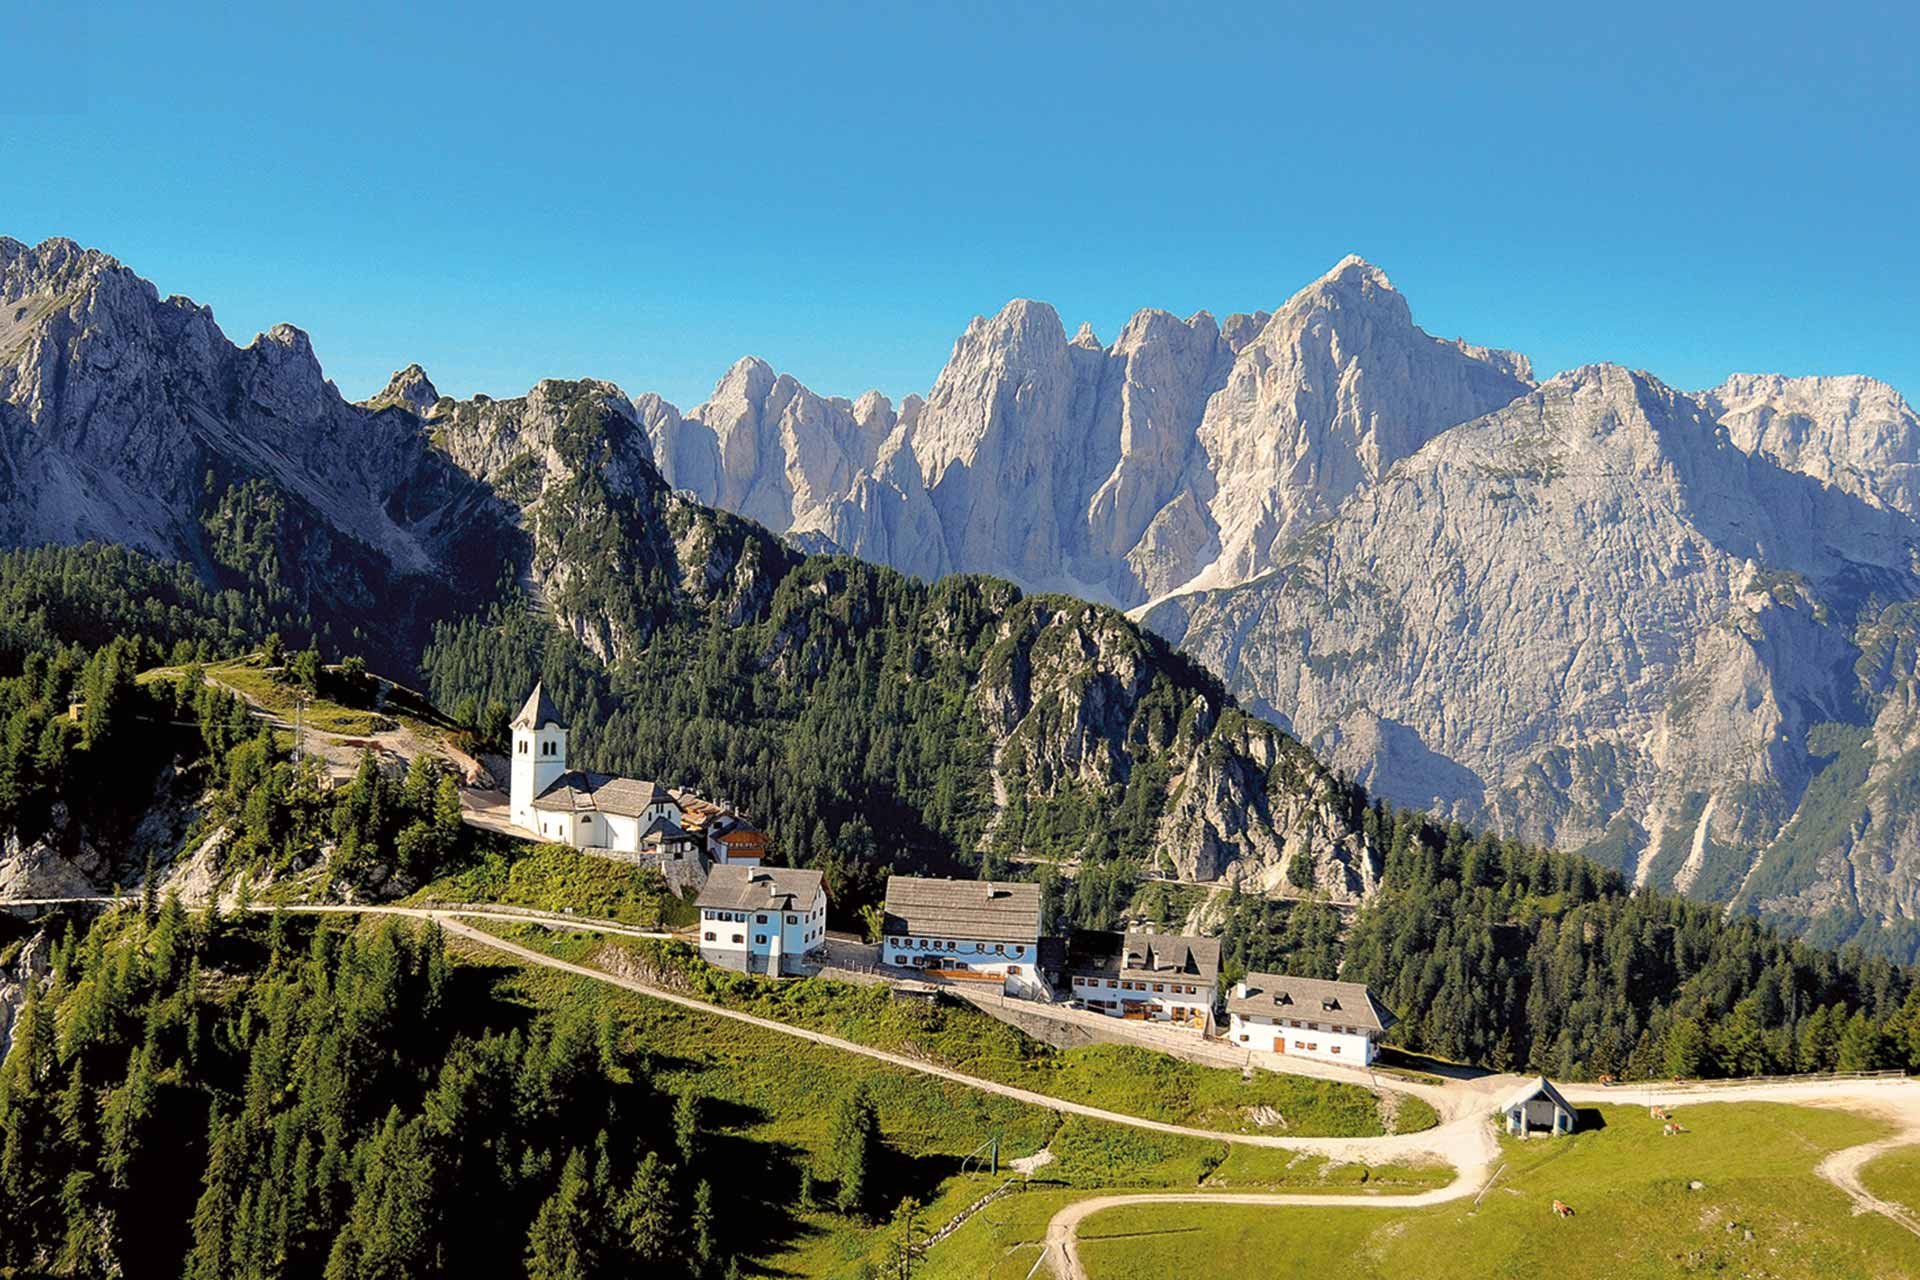 Berg und Tal: Es ist das Durchwandern von drei Kulturen, das die Besonderheit des Alpe-Adria-Trails ausmacht. Hier das italienische Dorf Monte Lussari.